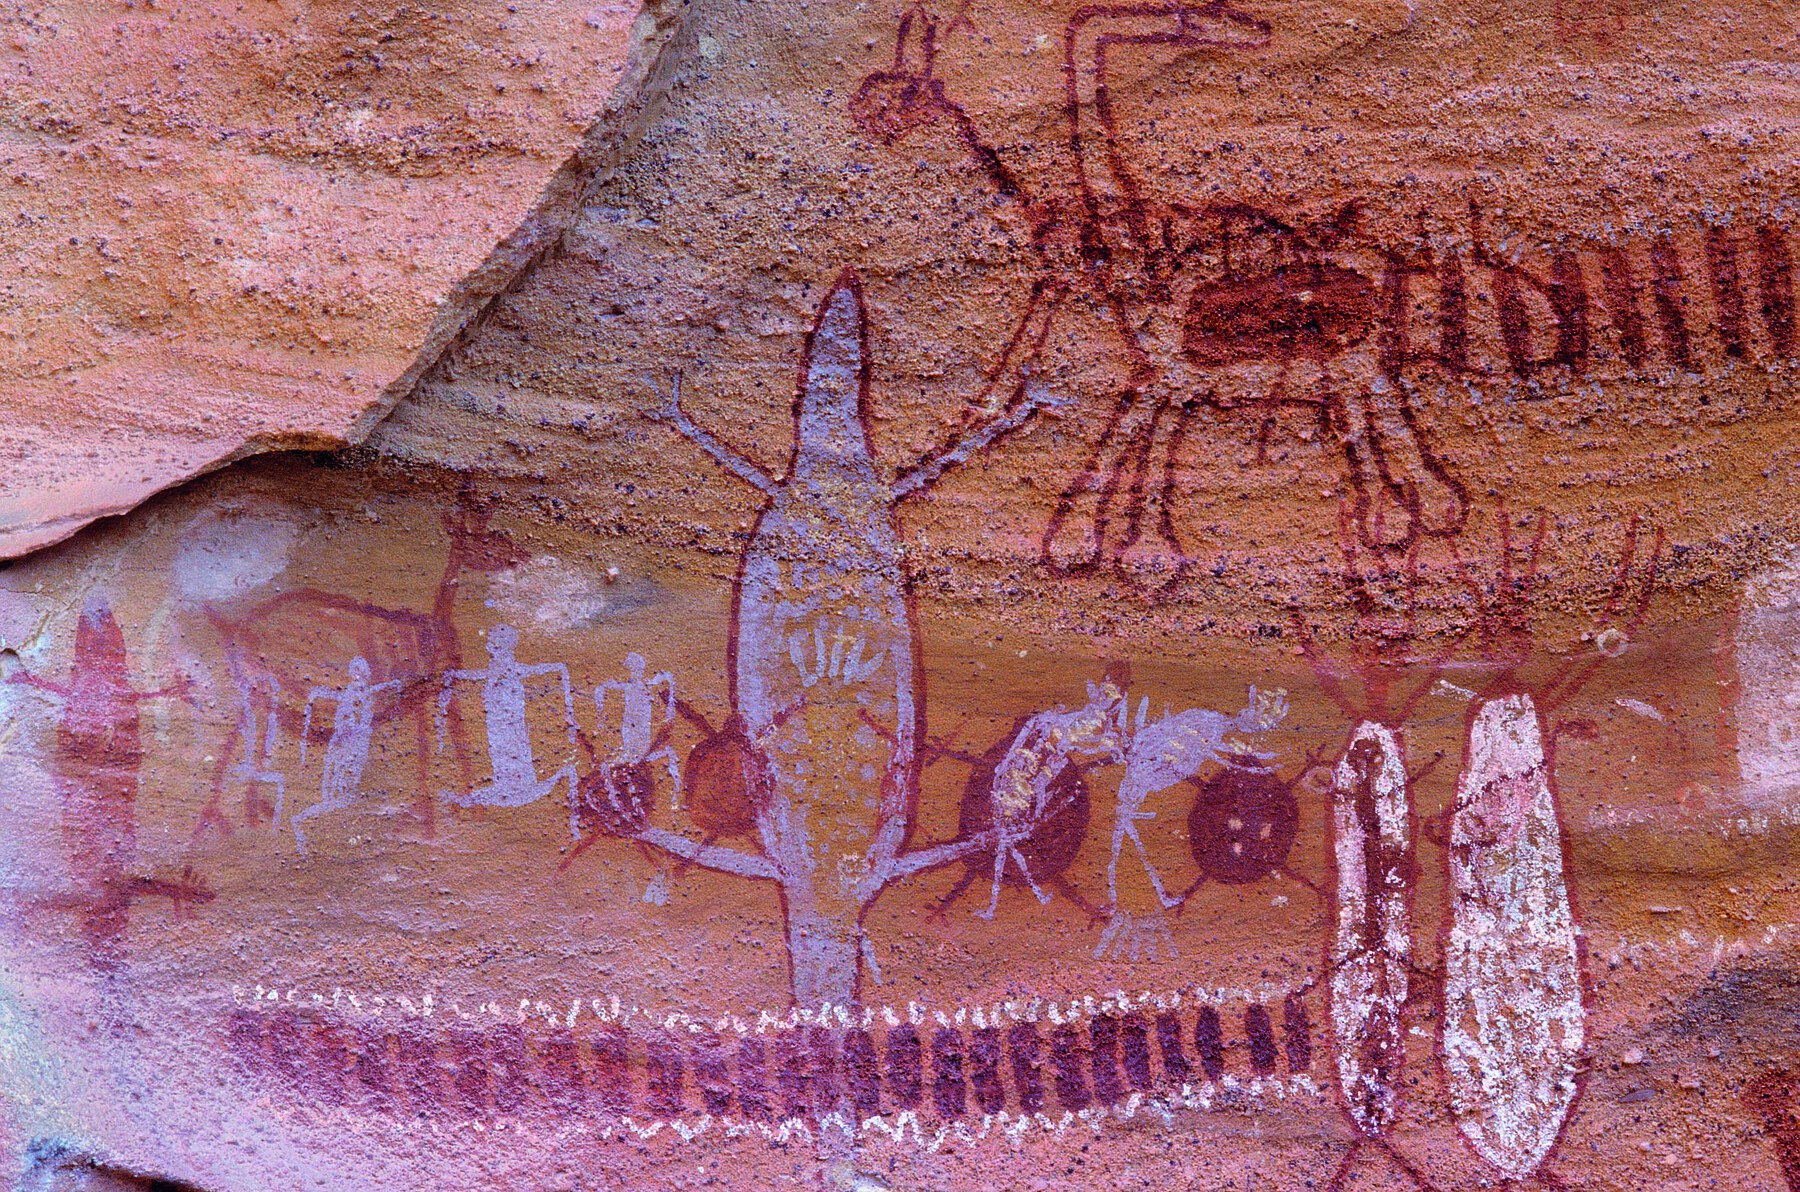 Fotografia. Pintura rupestre de seres que lembram figuras humanas ou animais antigos. Algumas dessas figuras possuem quatro patas, além de caudas ou rabos, outras aparecem com somente quatro membros. Elas estão pintadas em tons de branco e vermelho sobre rochas.